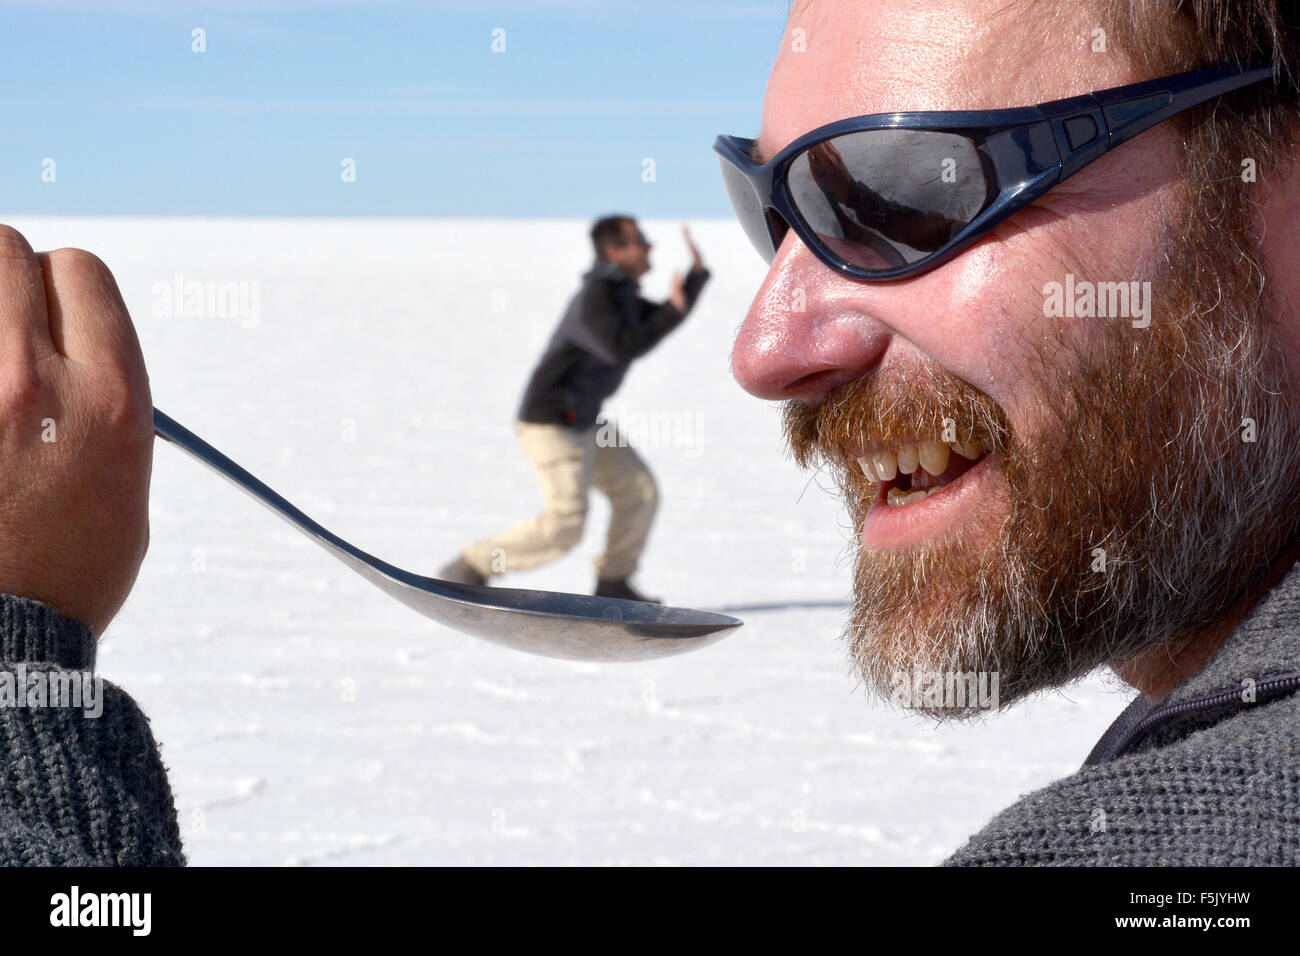 Optische Täuschung, Mann hält eine Person auf einem Löffel, Salzsee Salar de Uyuni, Bolivien Stockfoto